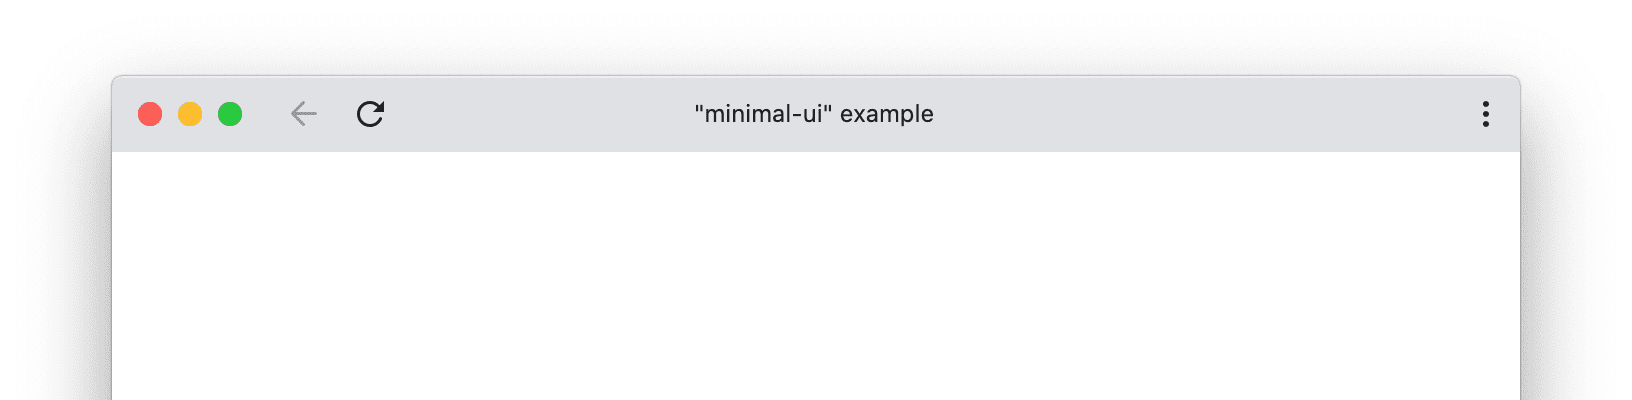 Un ejemplo de una ventana PWA con visualización mínima de la interfaz de usuario (UI).